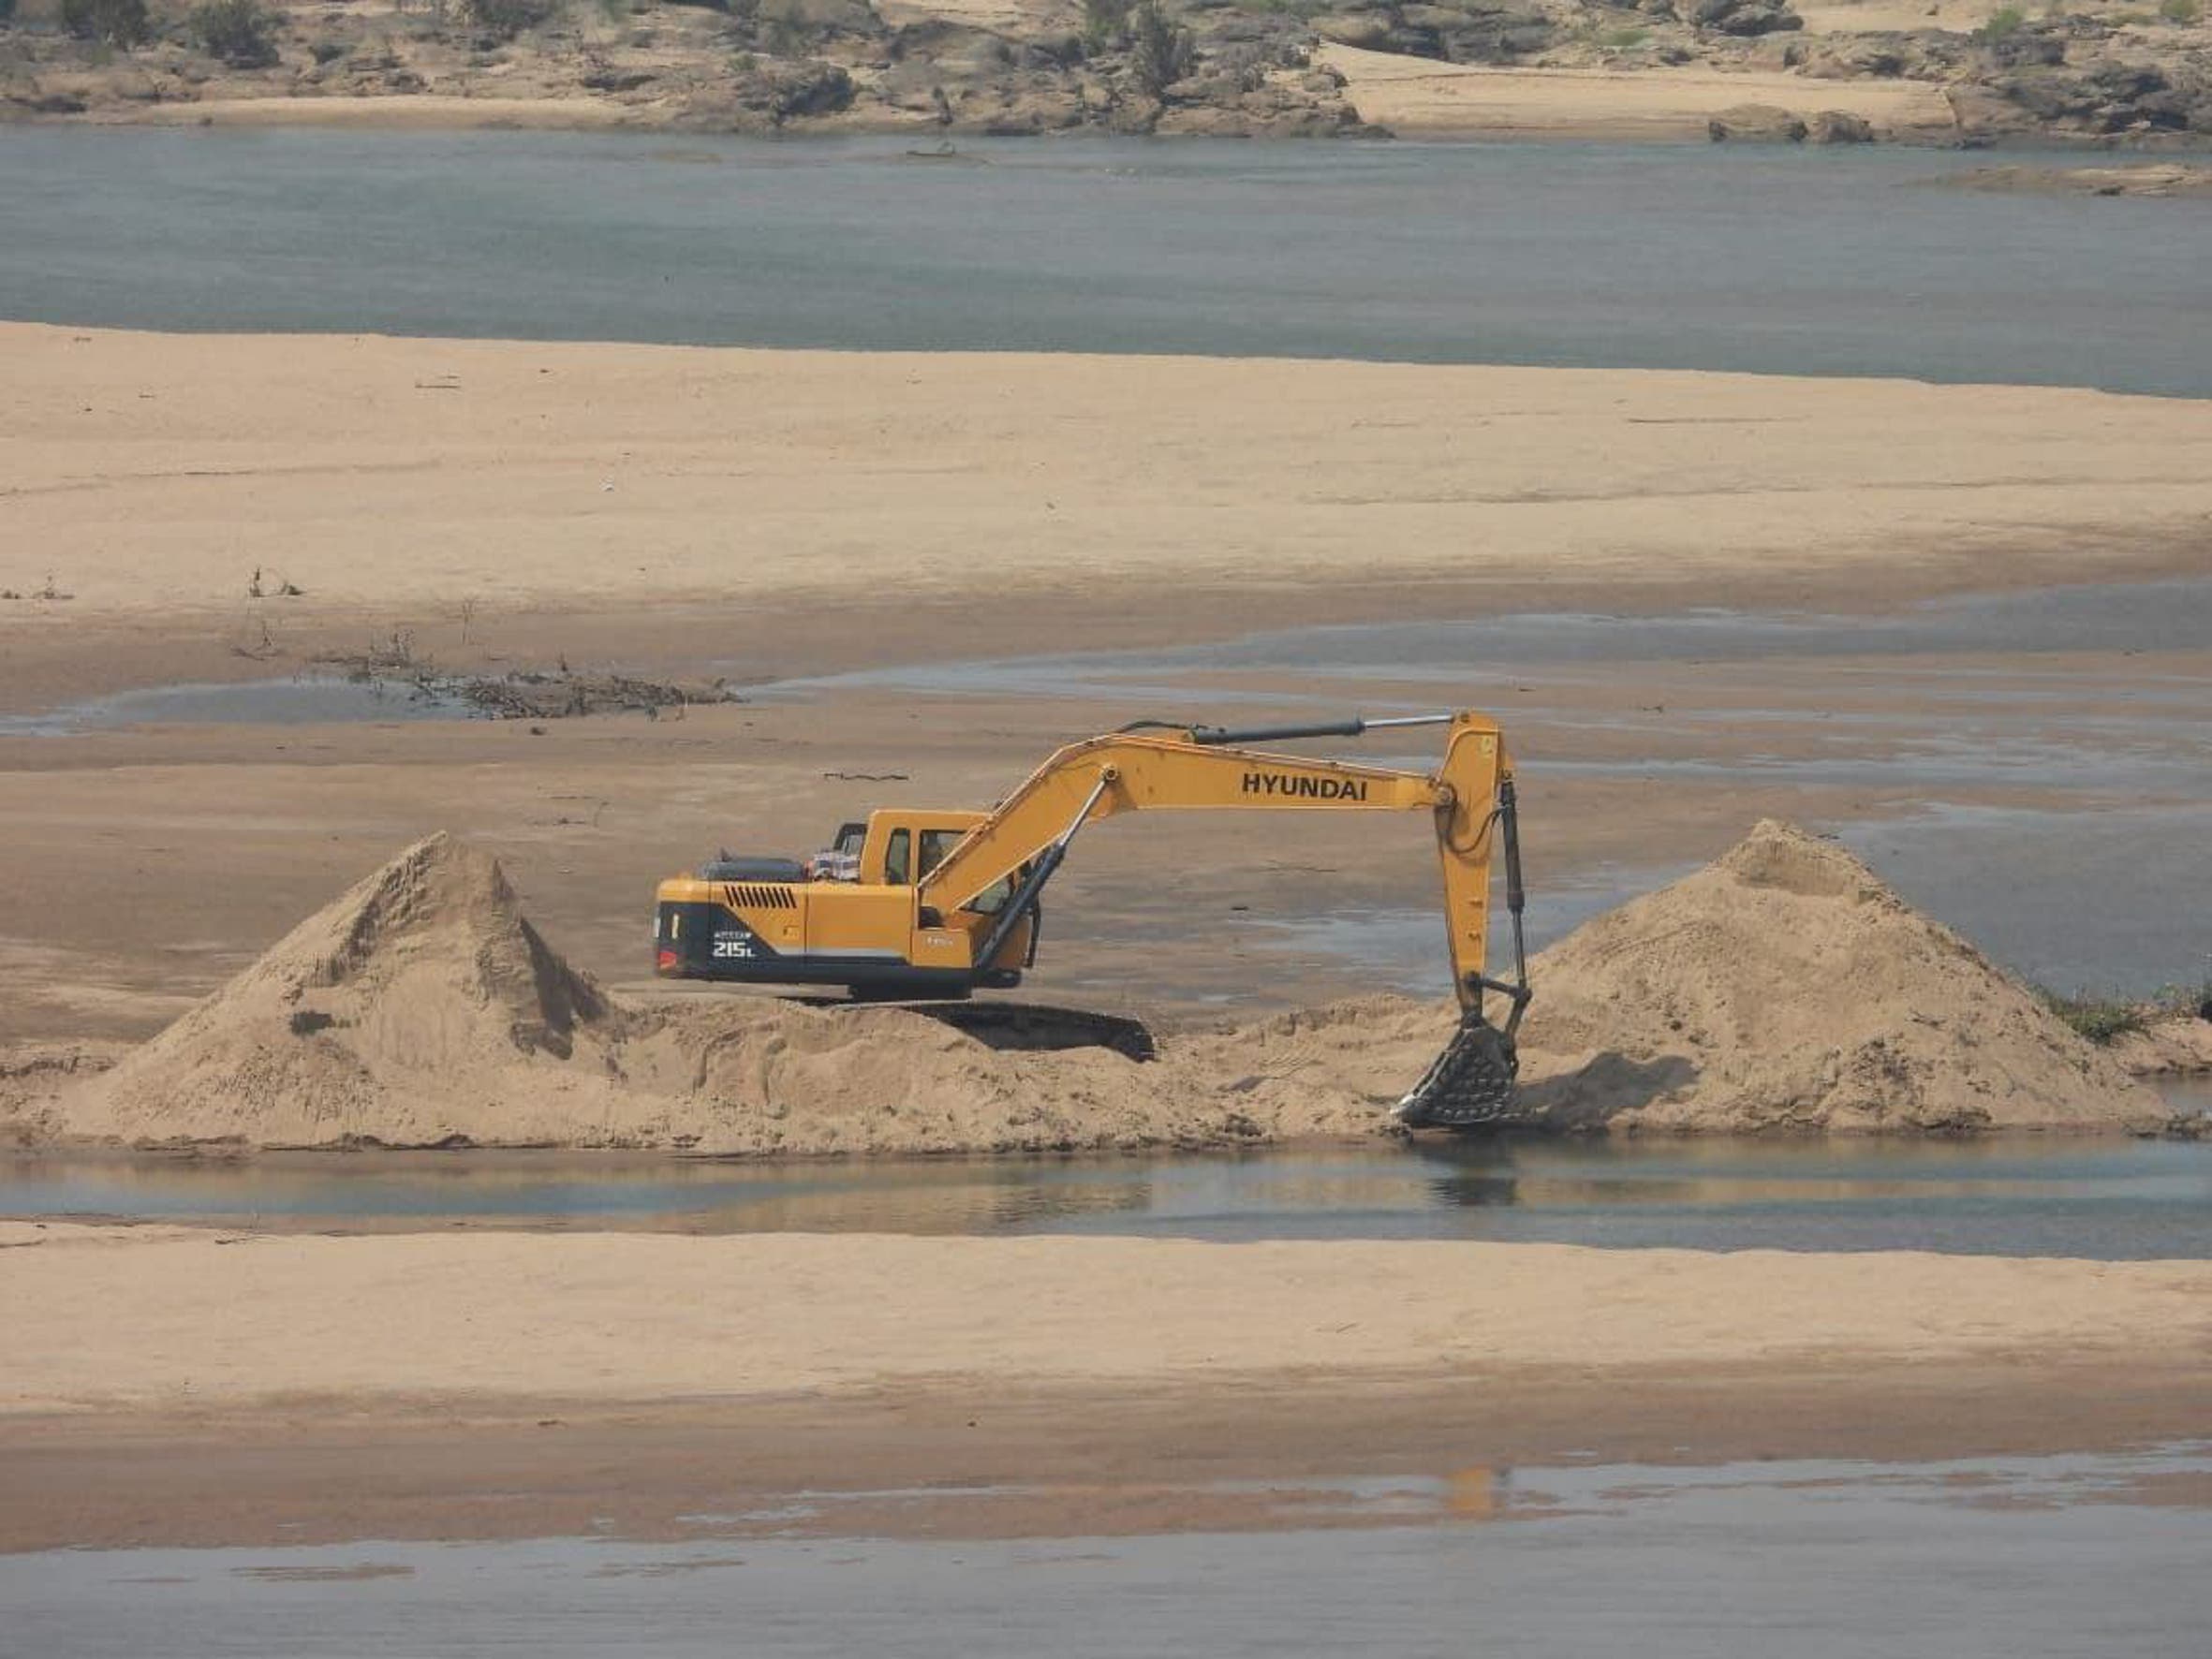 खनन कंपनी की करतूत : सोन नदी के बीच ही बना दी सड़क, धार में मशीनों से निकाल रहे रेत